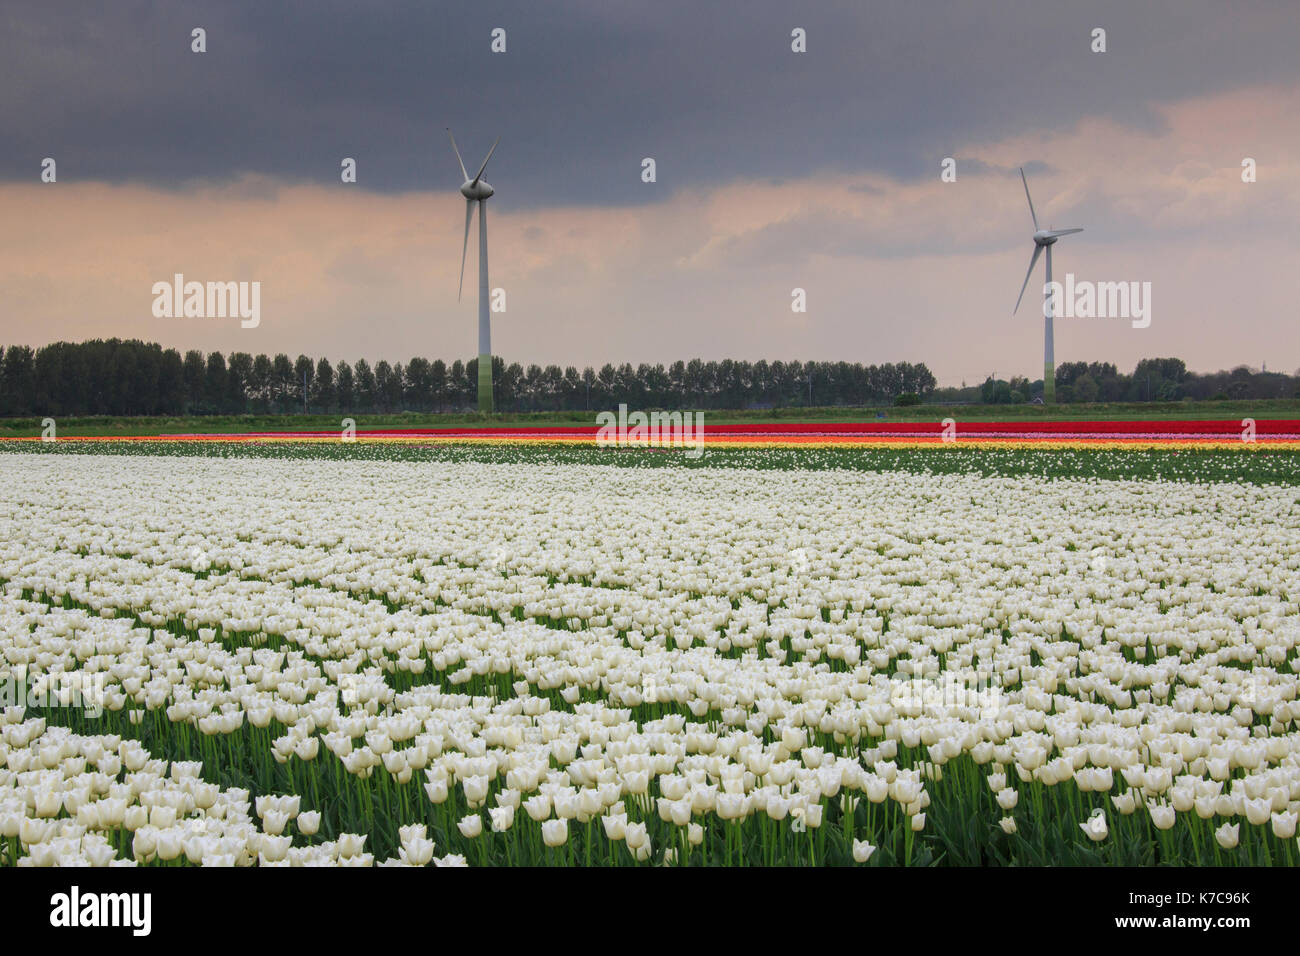 Tulipani multicolore circondato dal verde dei prati e delle turbine a vento berkmeer koggenland paesi Bassi Olanda settentrionale Europa Foto Stock